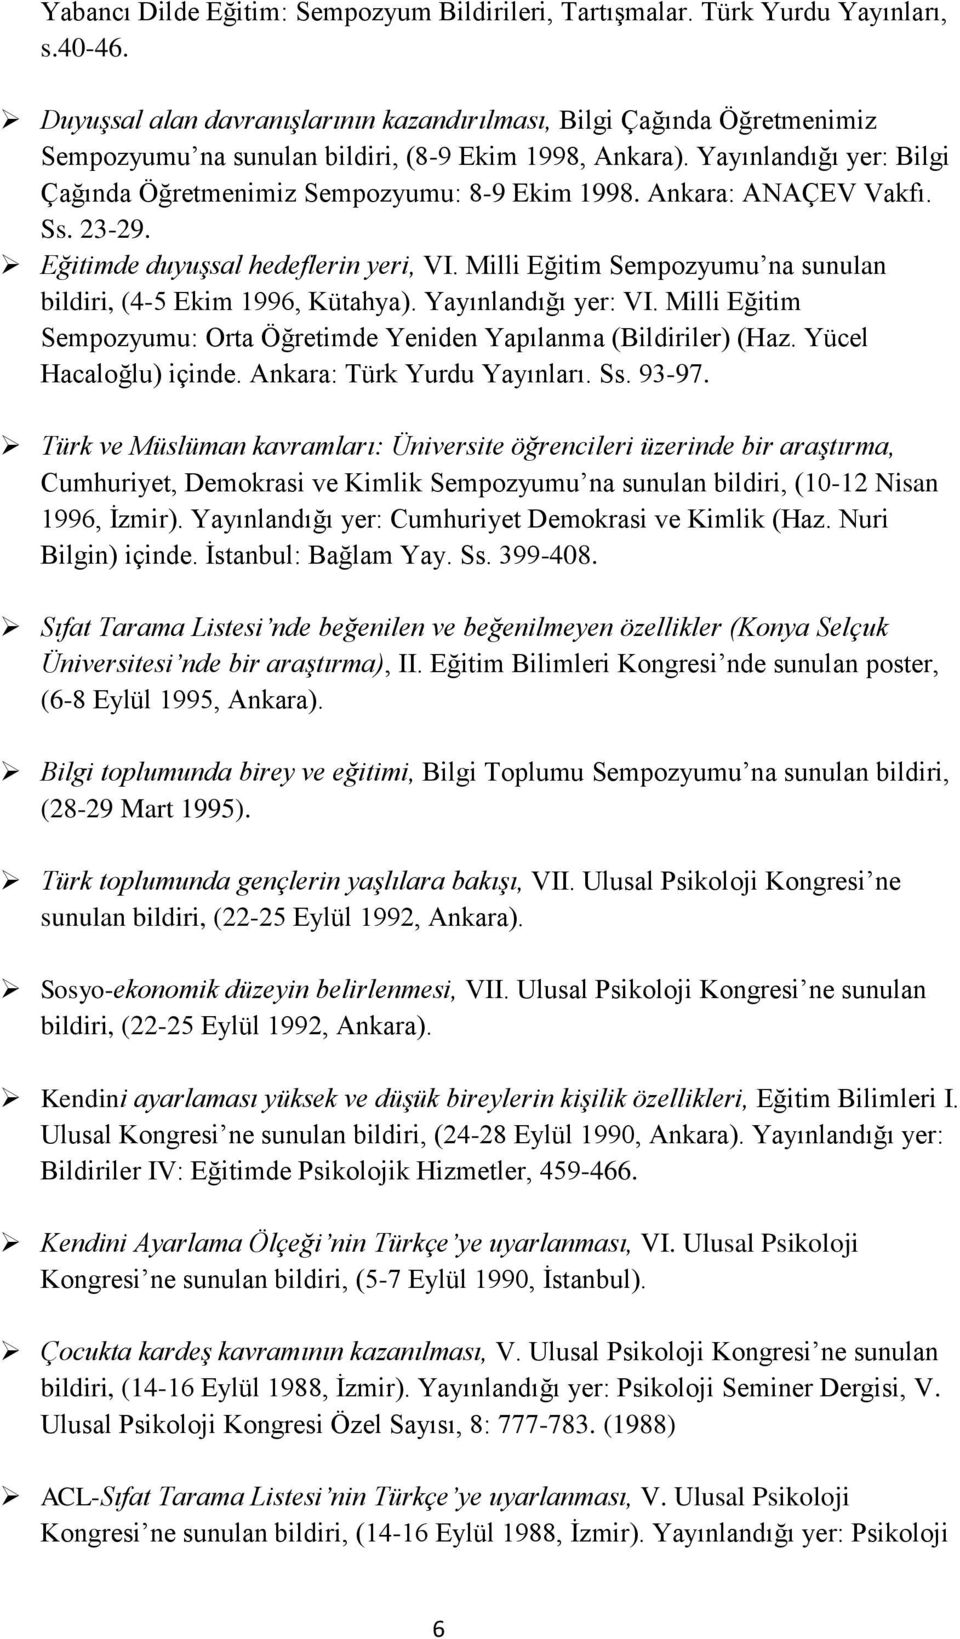 Ankara: ANAÇEV Vakfı. Ss. 23-29. Eğitimde duyuşsal hedeflerin yeri, VI. Milli Eğitim Sempozyumu na sunulan bildiri, (4-5 Ekim 1996, Kütahya). Yayınlandığı yer: VI.